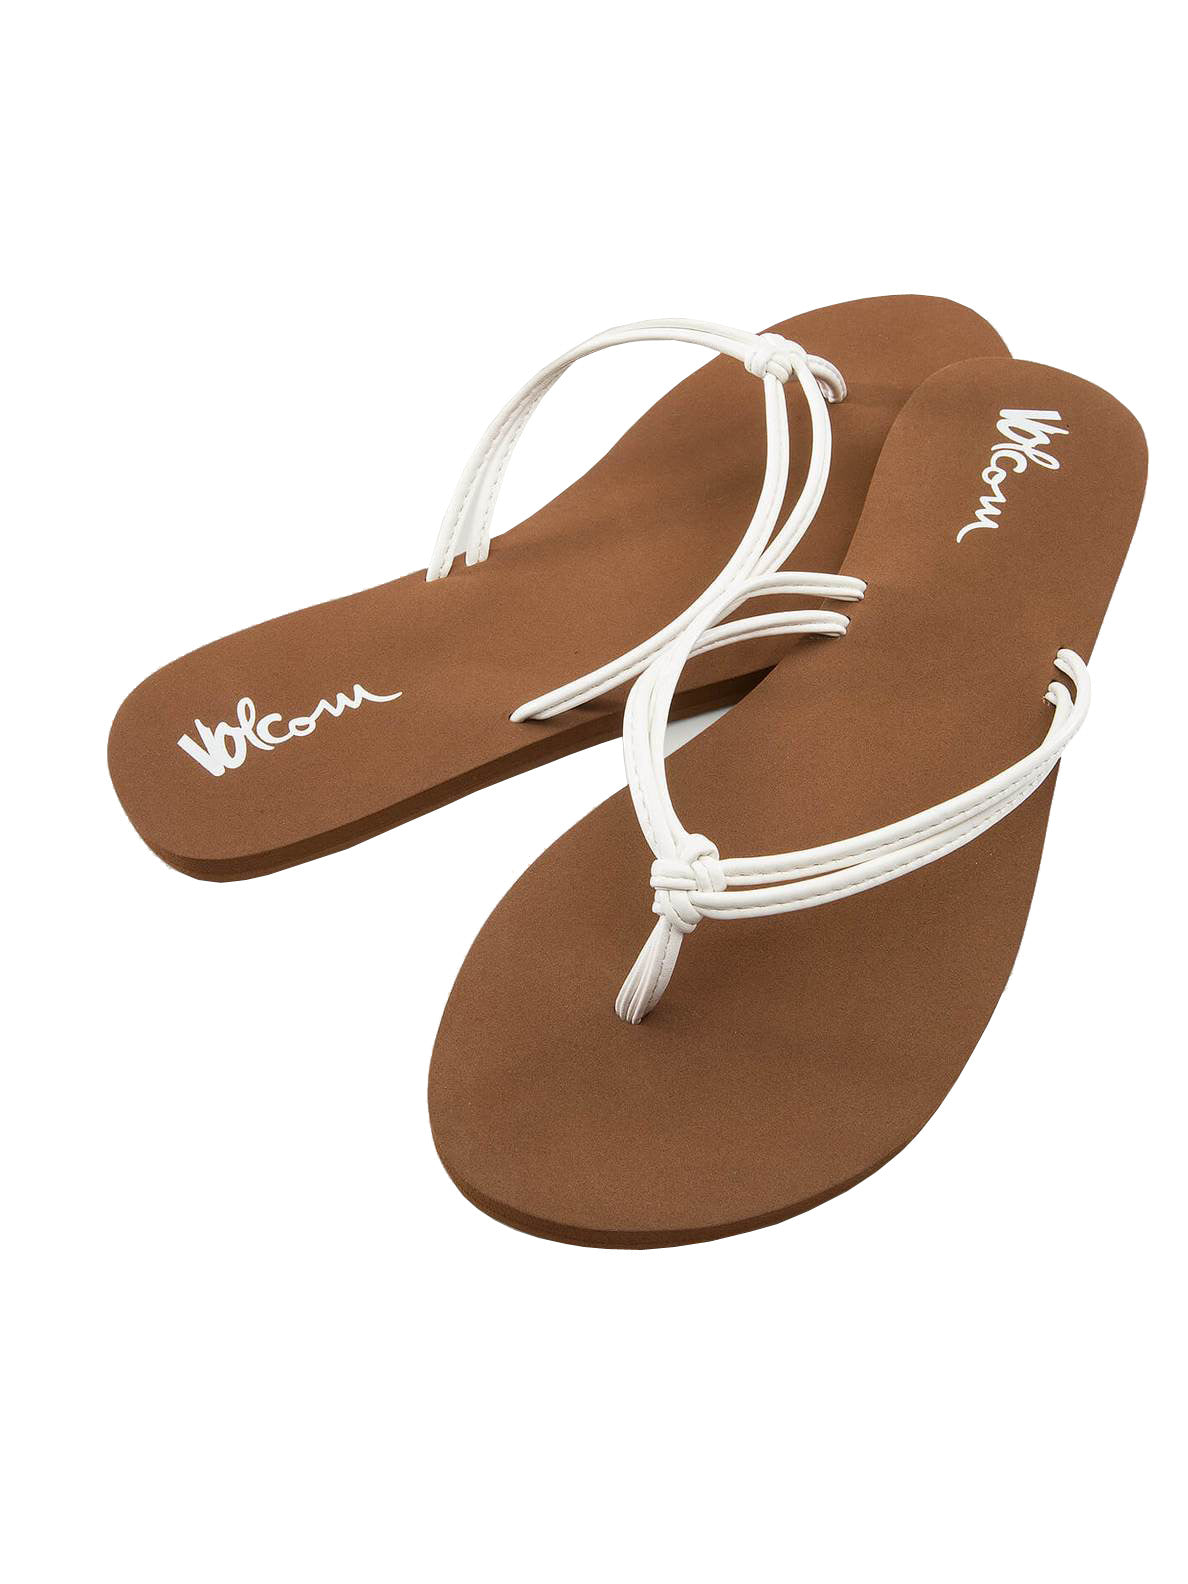 Volcom Forever and Ever 2 Womens Sandal WHT-White 7